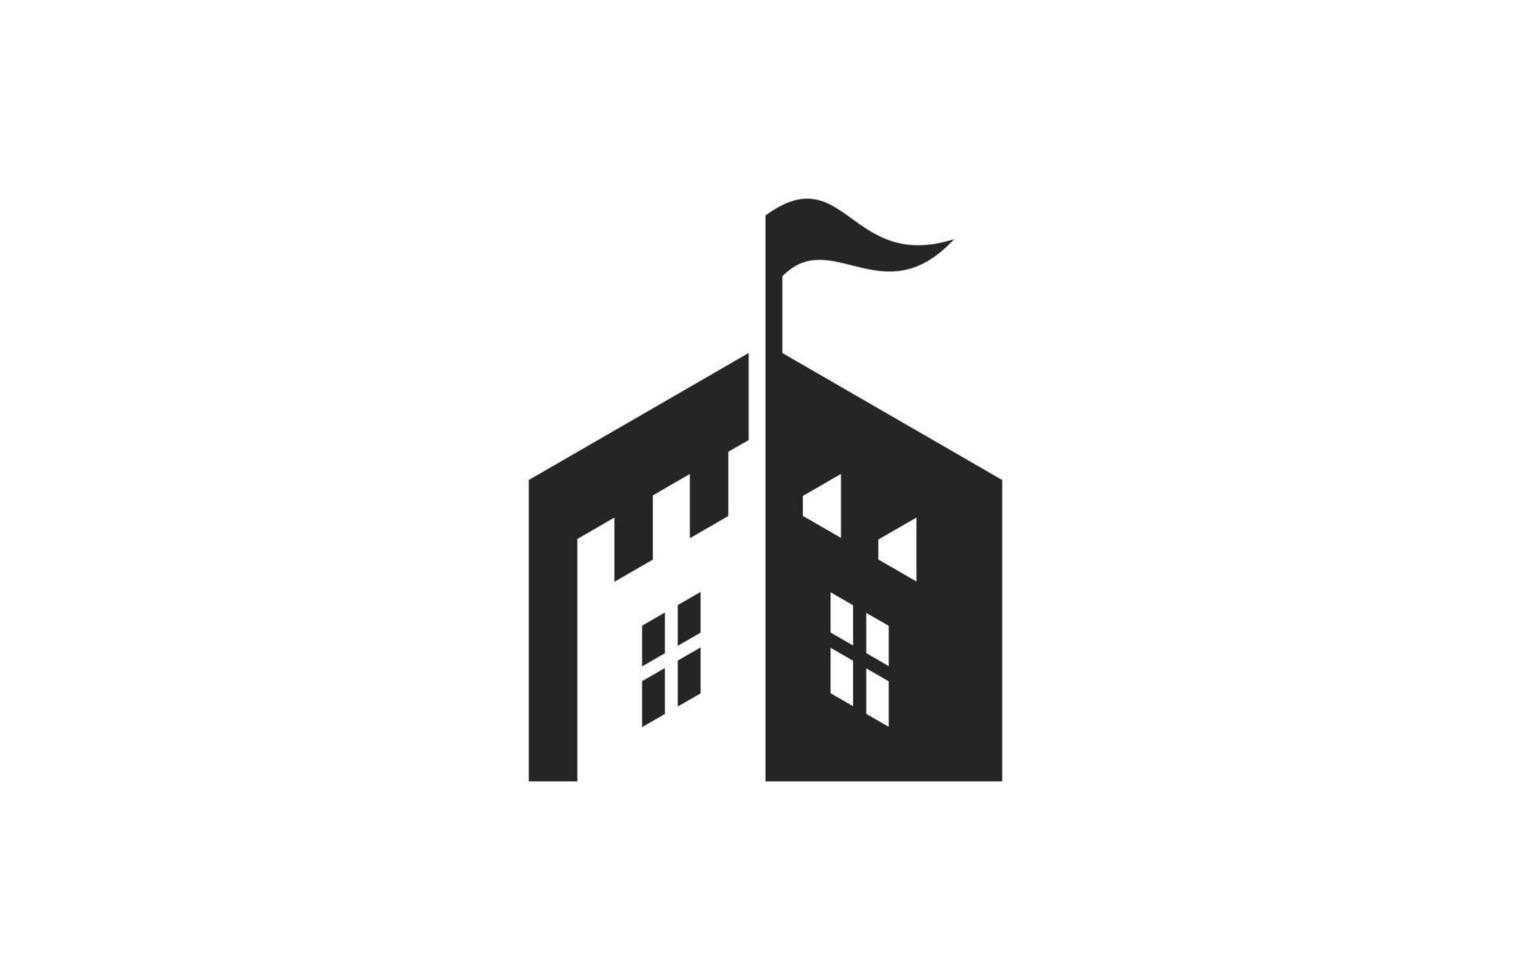 kasteel logo pictogram symbool inspiratie vector